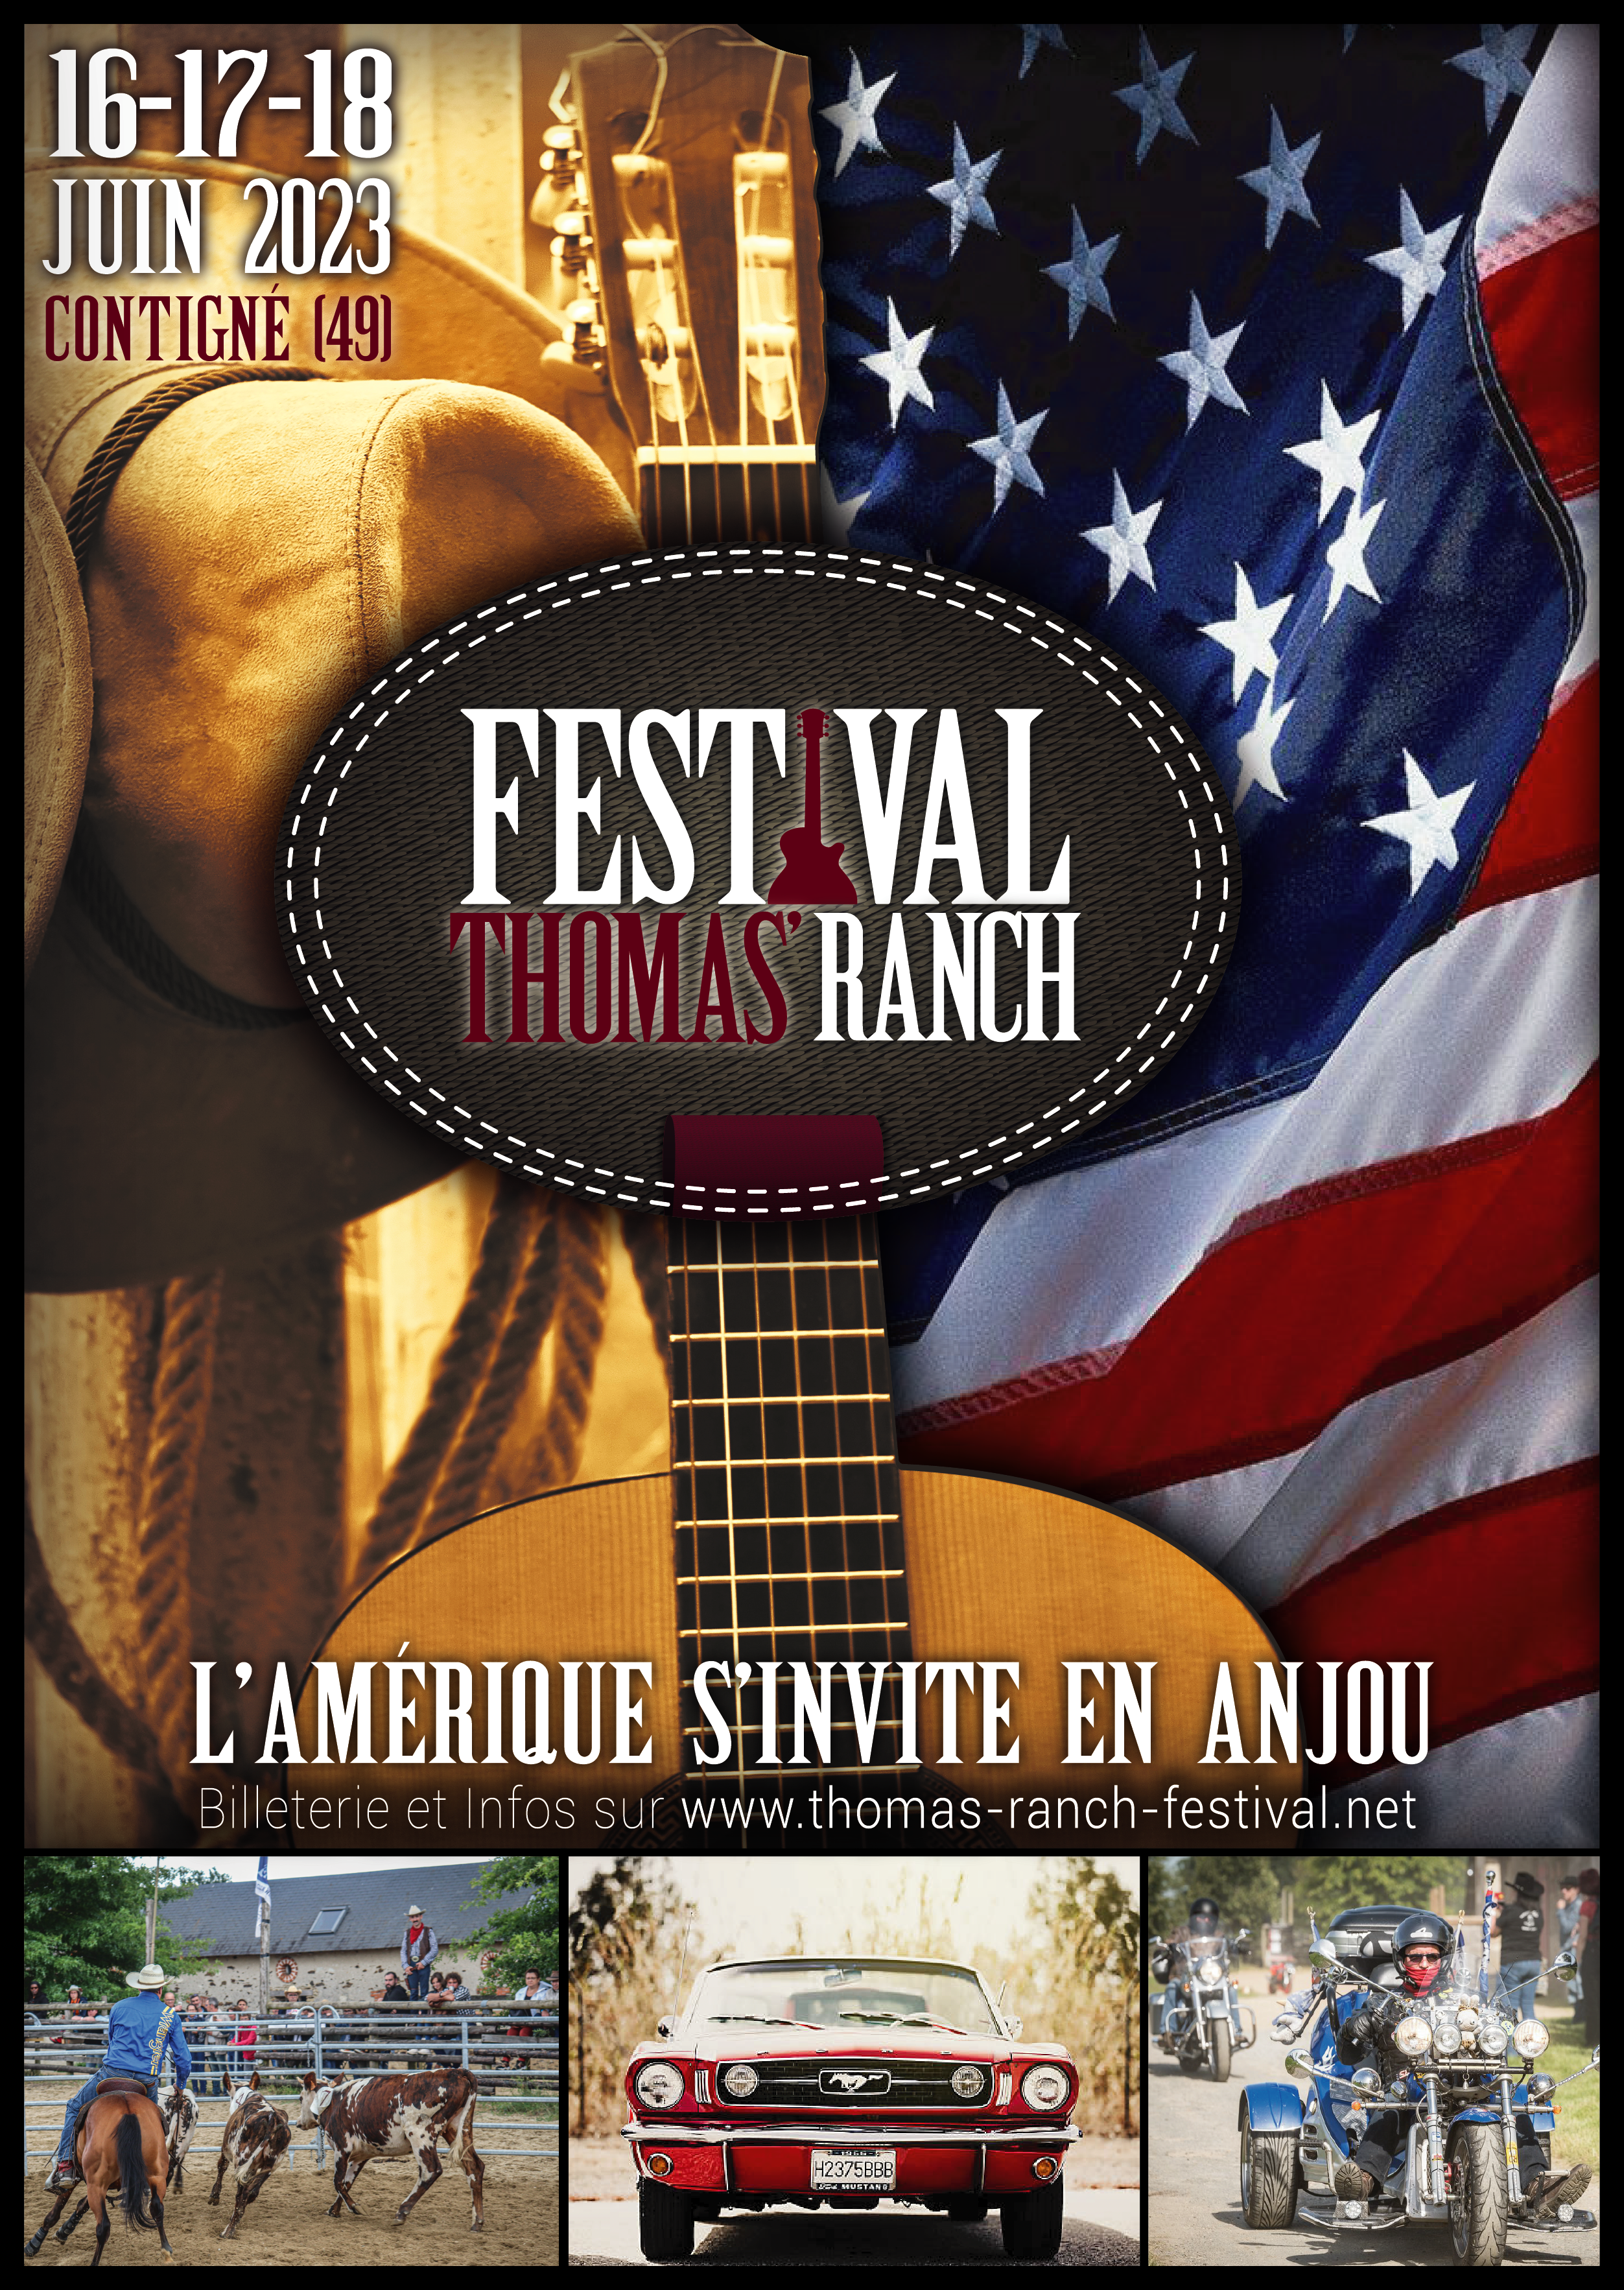 Festival Thomas’ Ranch se déroule les 16, 17 et 18 juin 2023